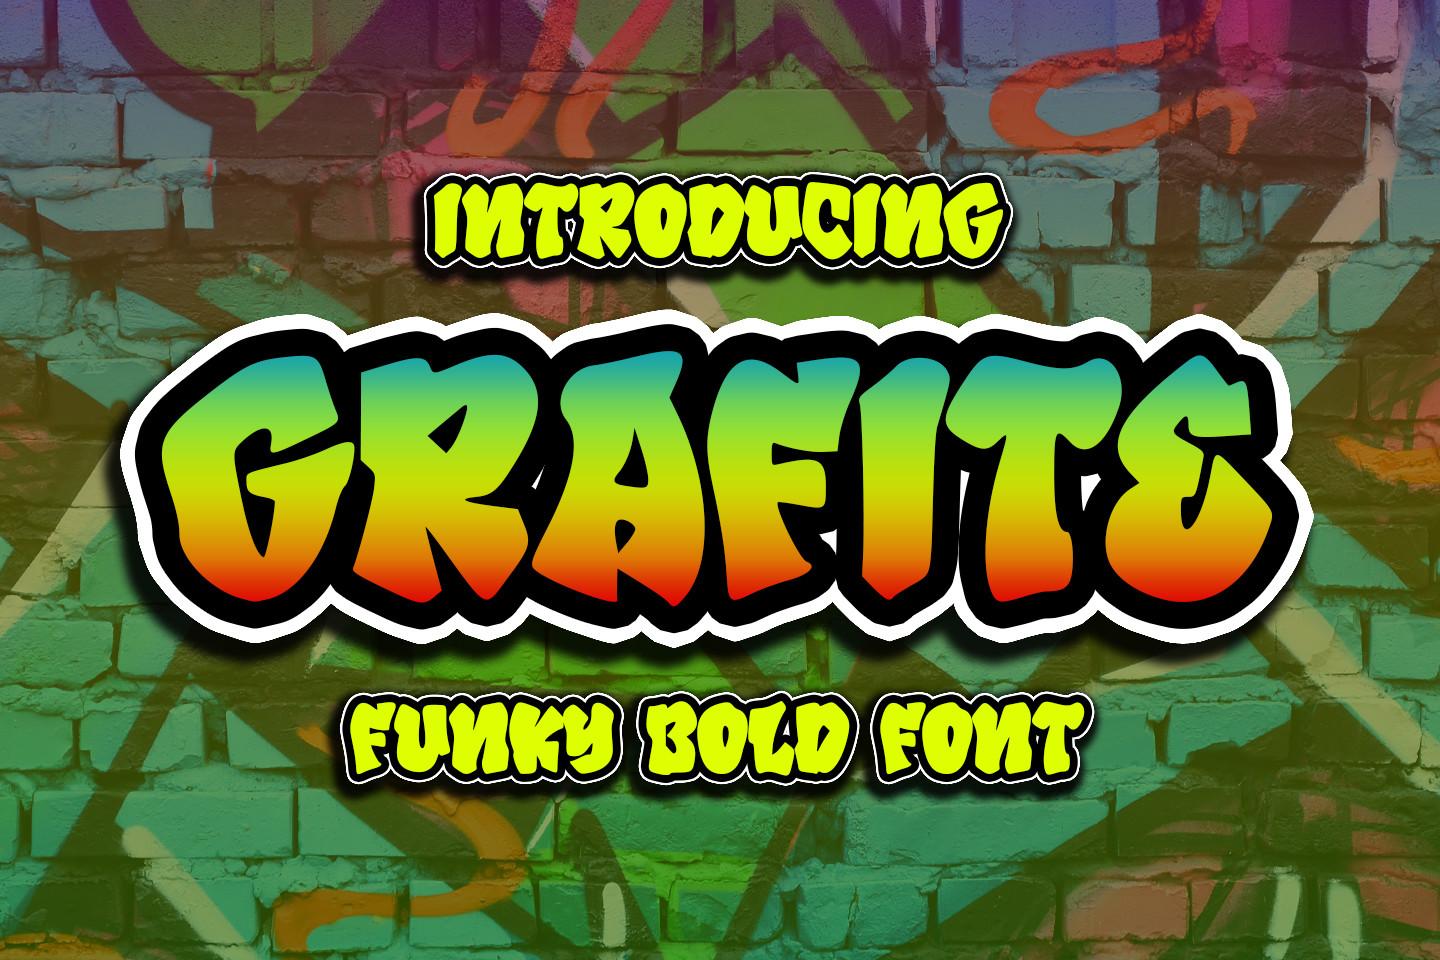 Grafite Font